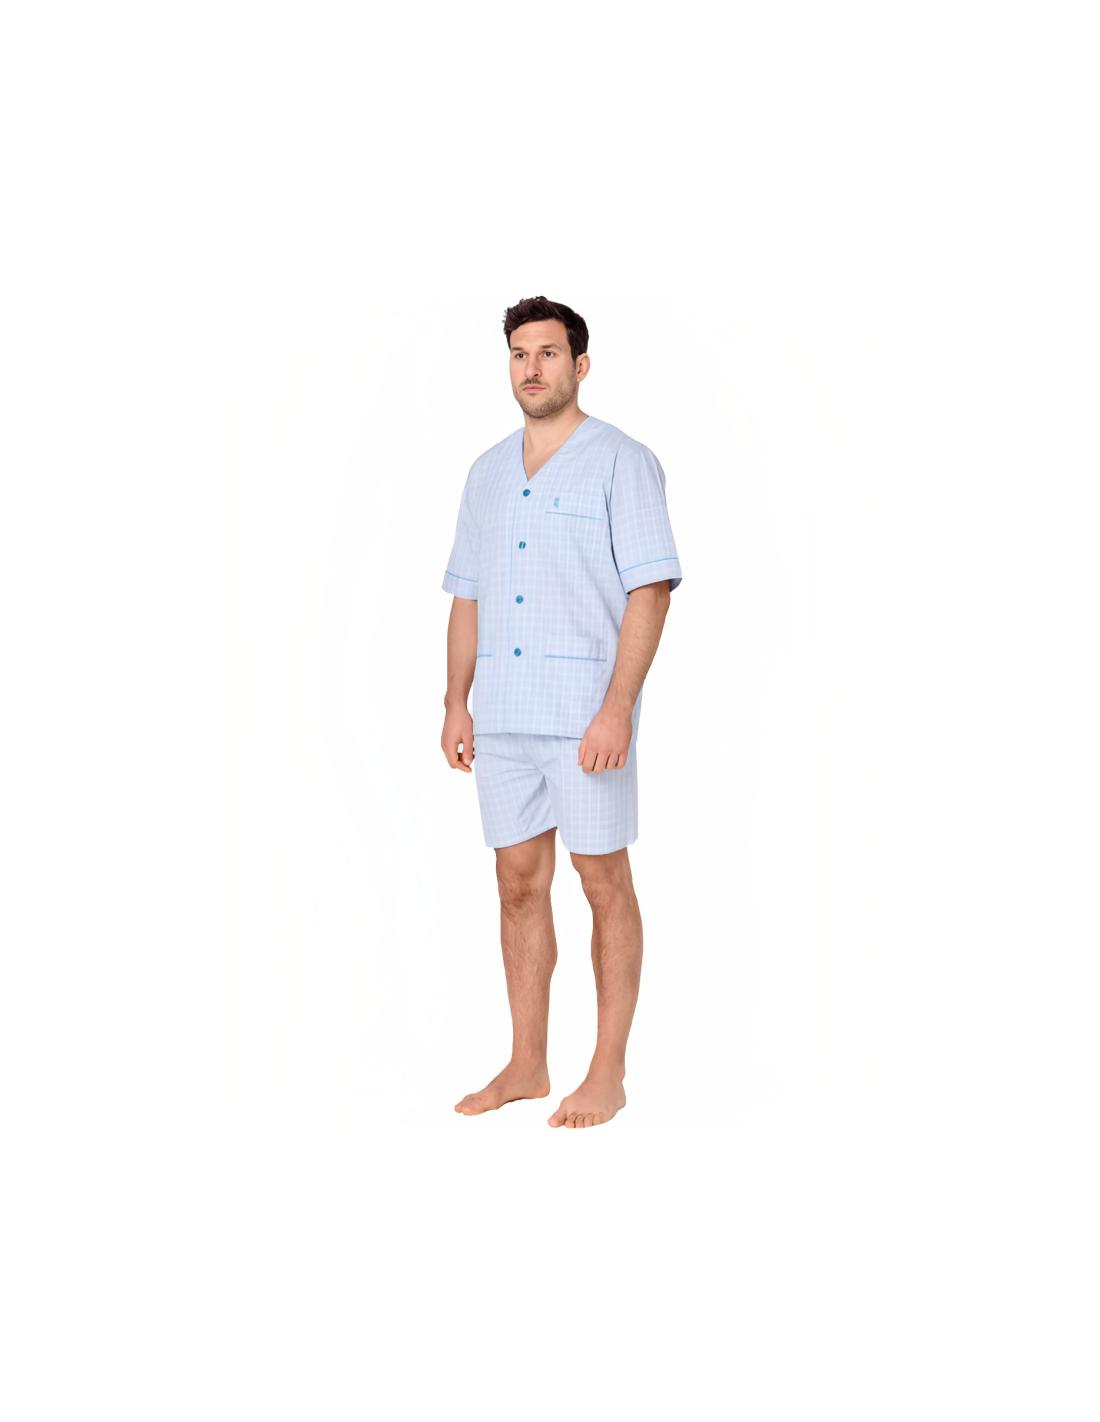 Pijama hombre tela sin cuello en cuadritos azules